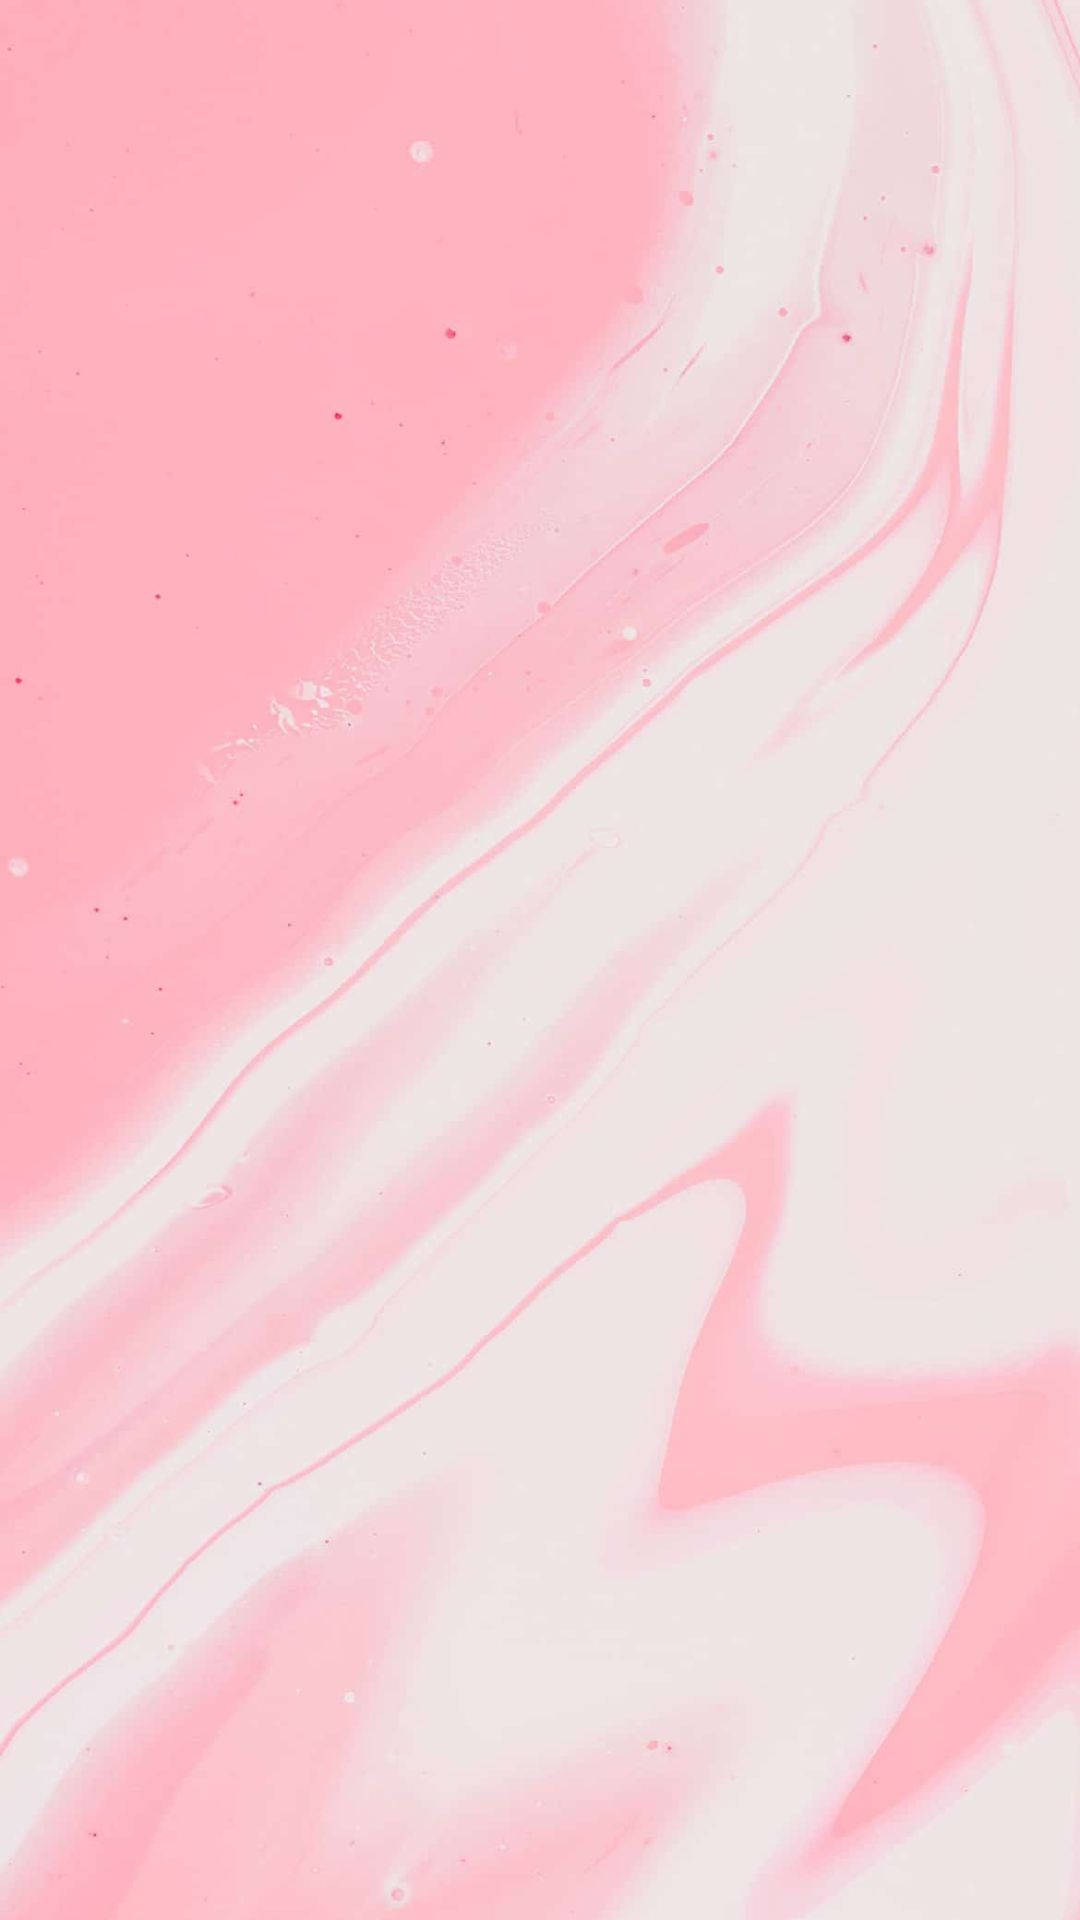 Pastel Aesthetic Pink Liquid